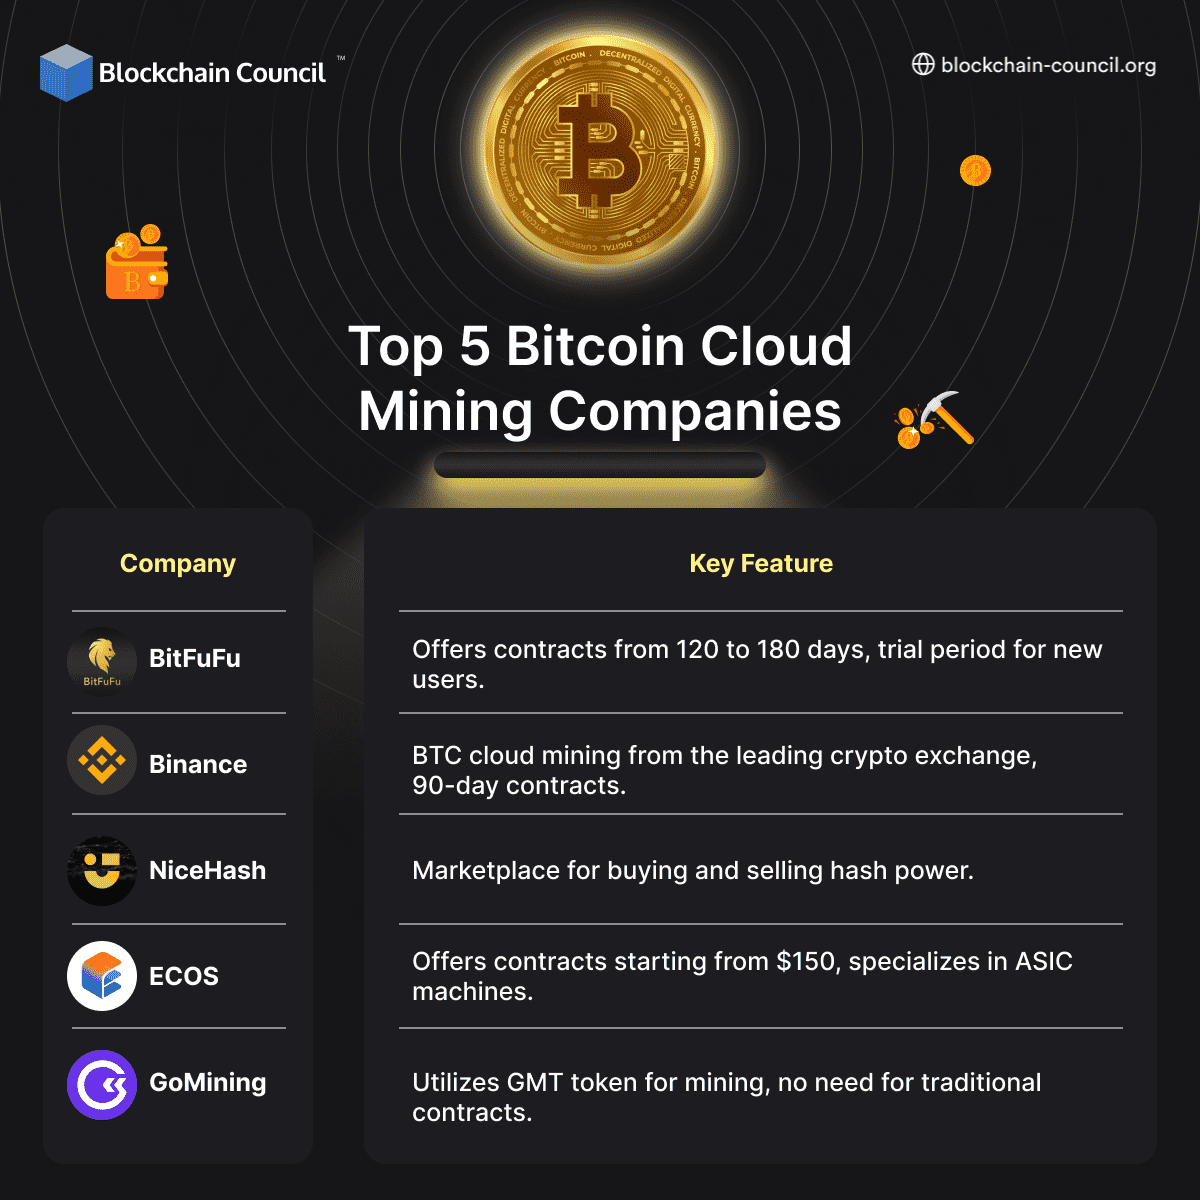 Top 5 Bitcoin Cloud Mining Companies